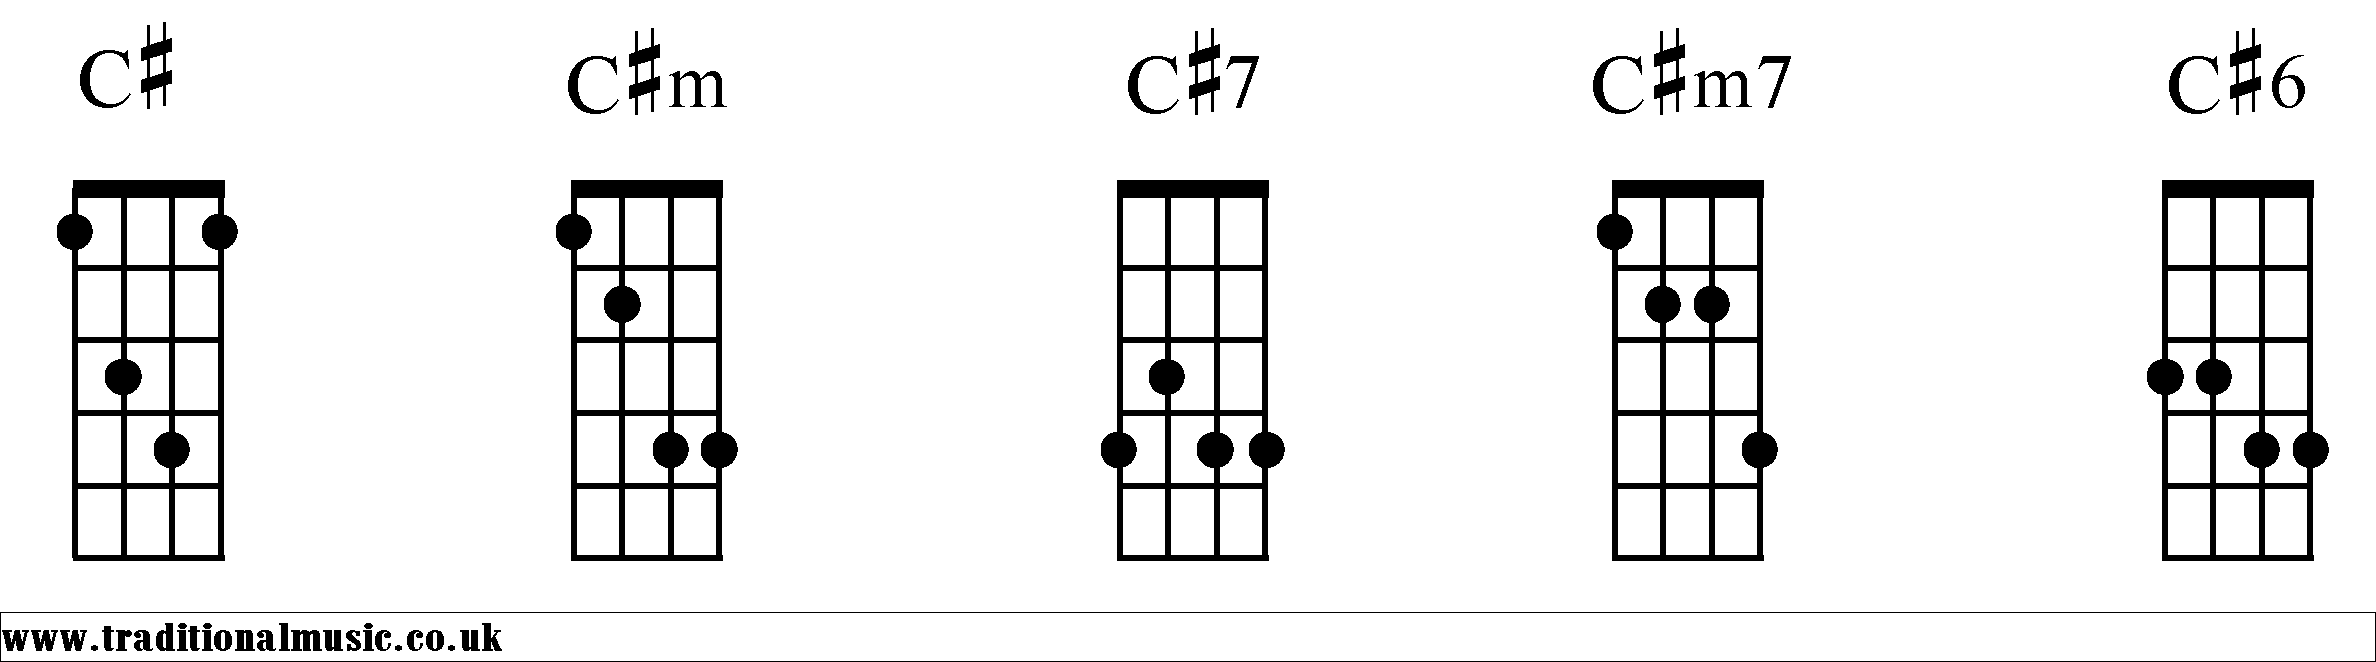 C# Chords diagrams Mandolin 1